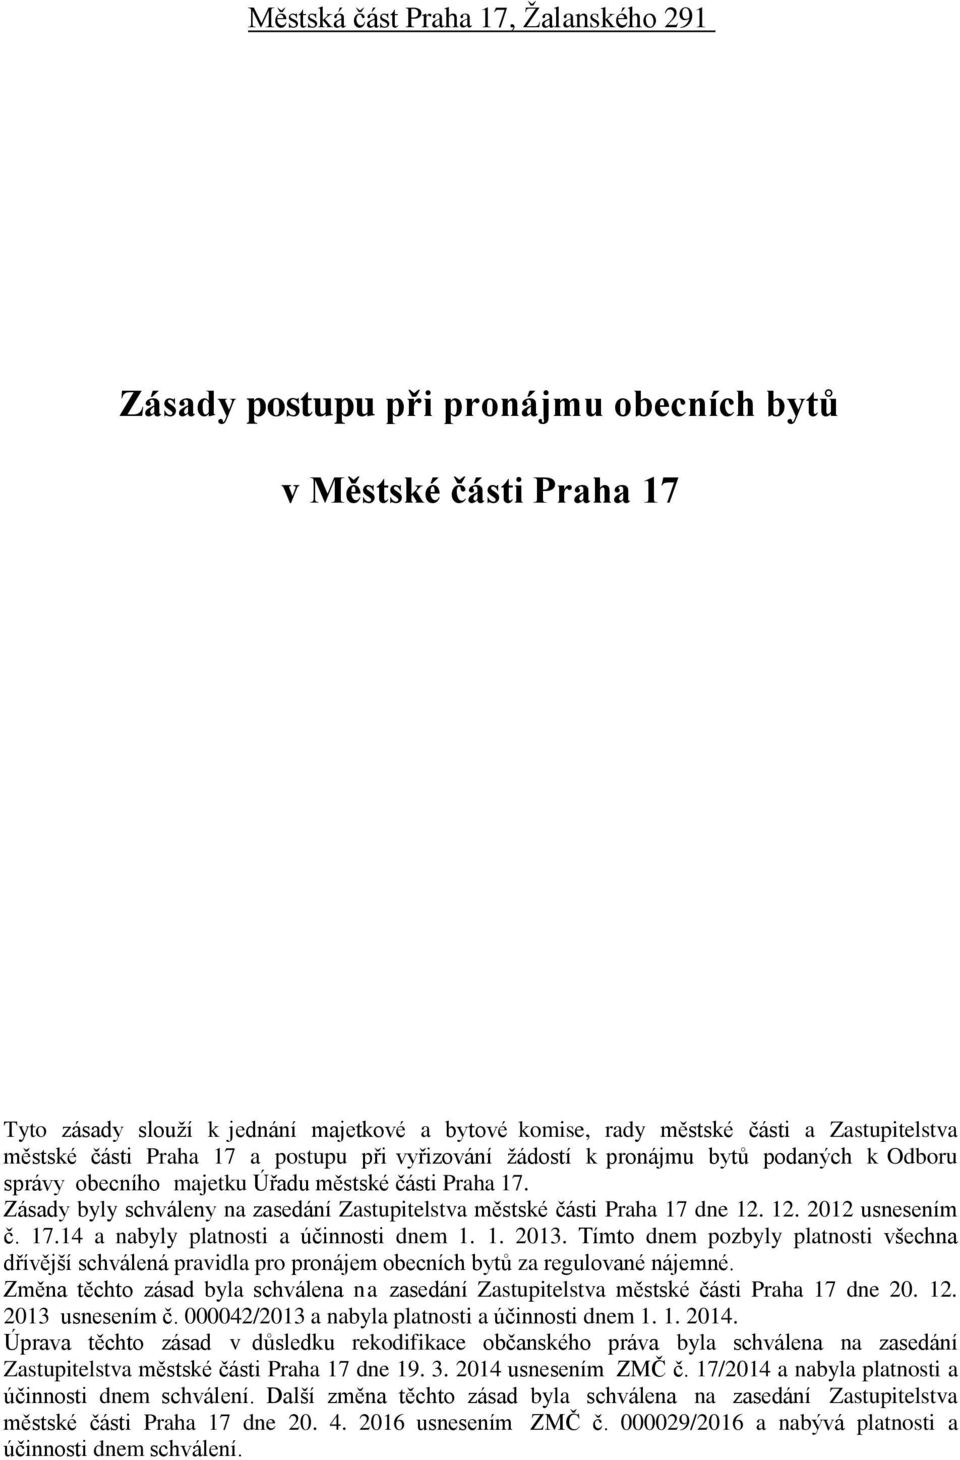 Zásady byly schváleny na zasedání Zastupitelstva městské části Praha 17 dne 12. 12. 2012 usnesením č. 17.14 a nabyly platnosti a účinnosti dnem 1. 1. 2013.